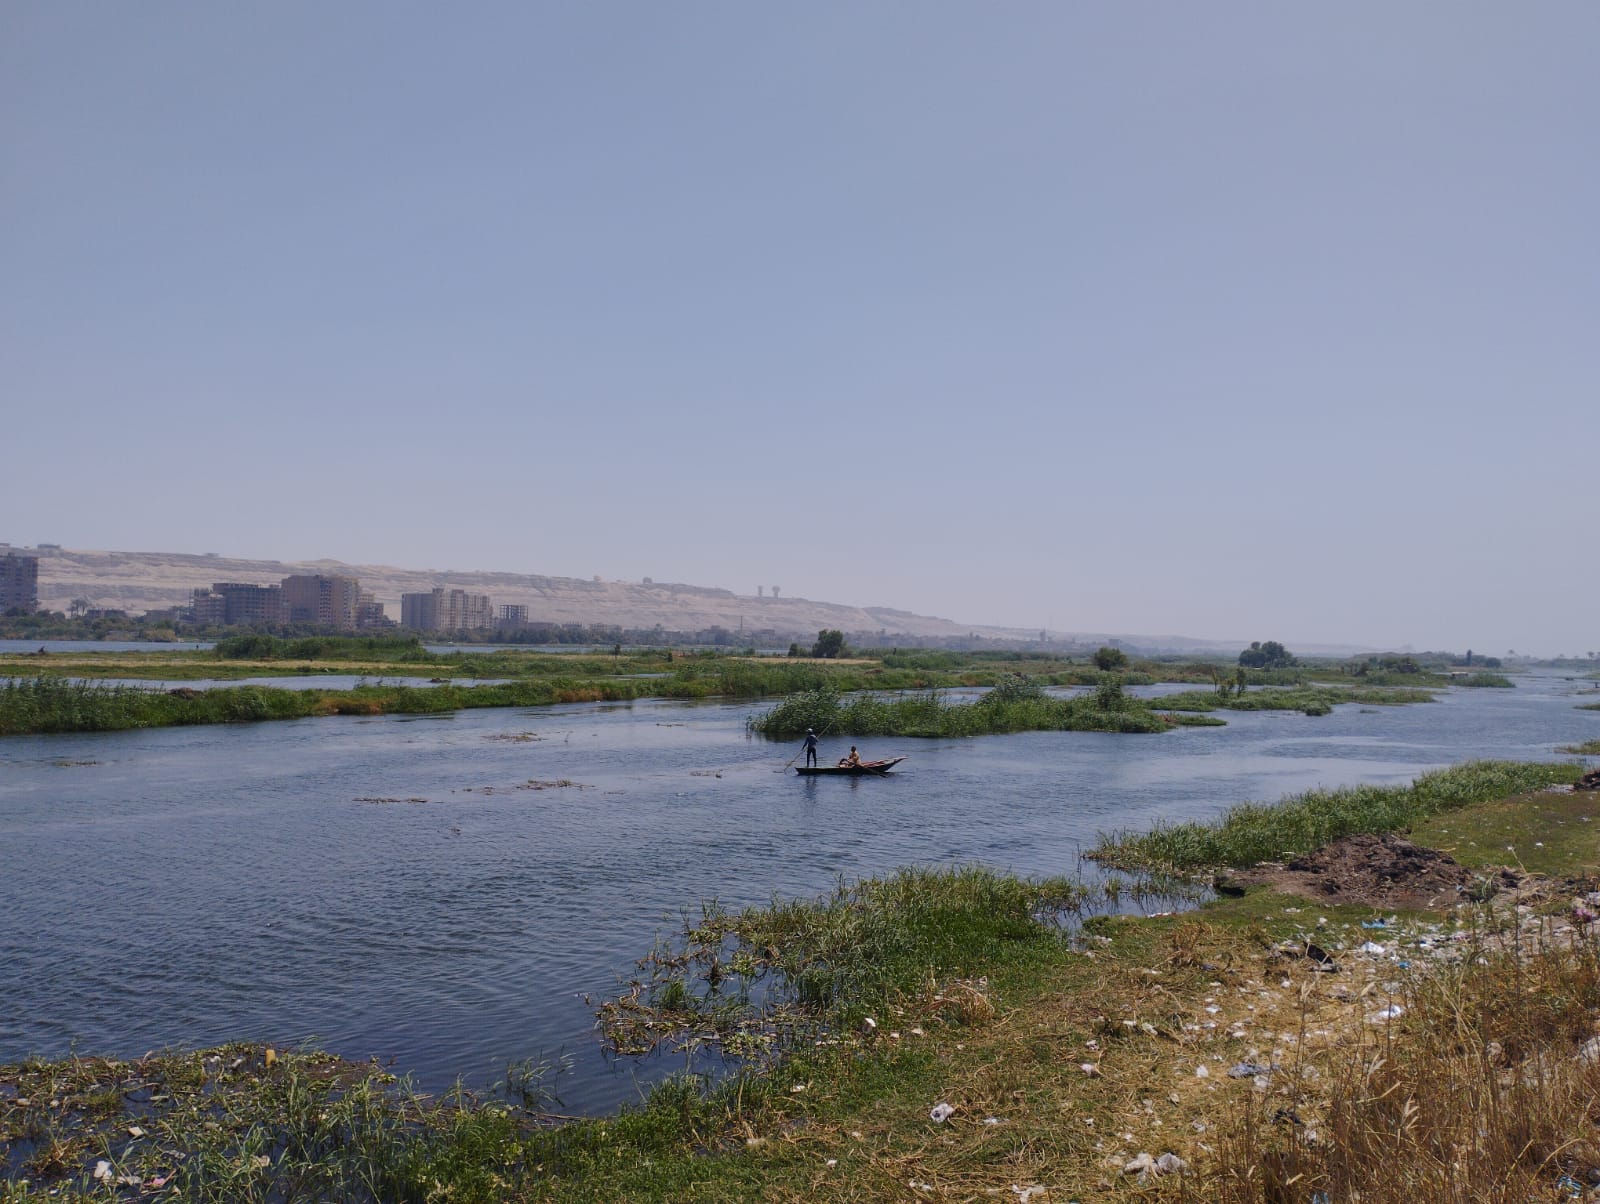  الصيادون ينطلقون بمراكب الصيد فى عرض النيل (3)